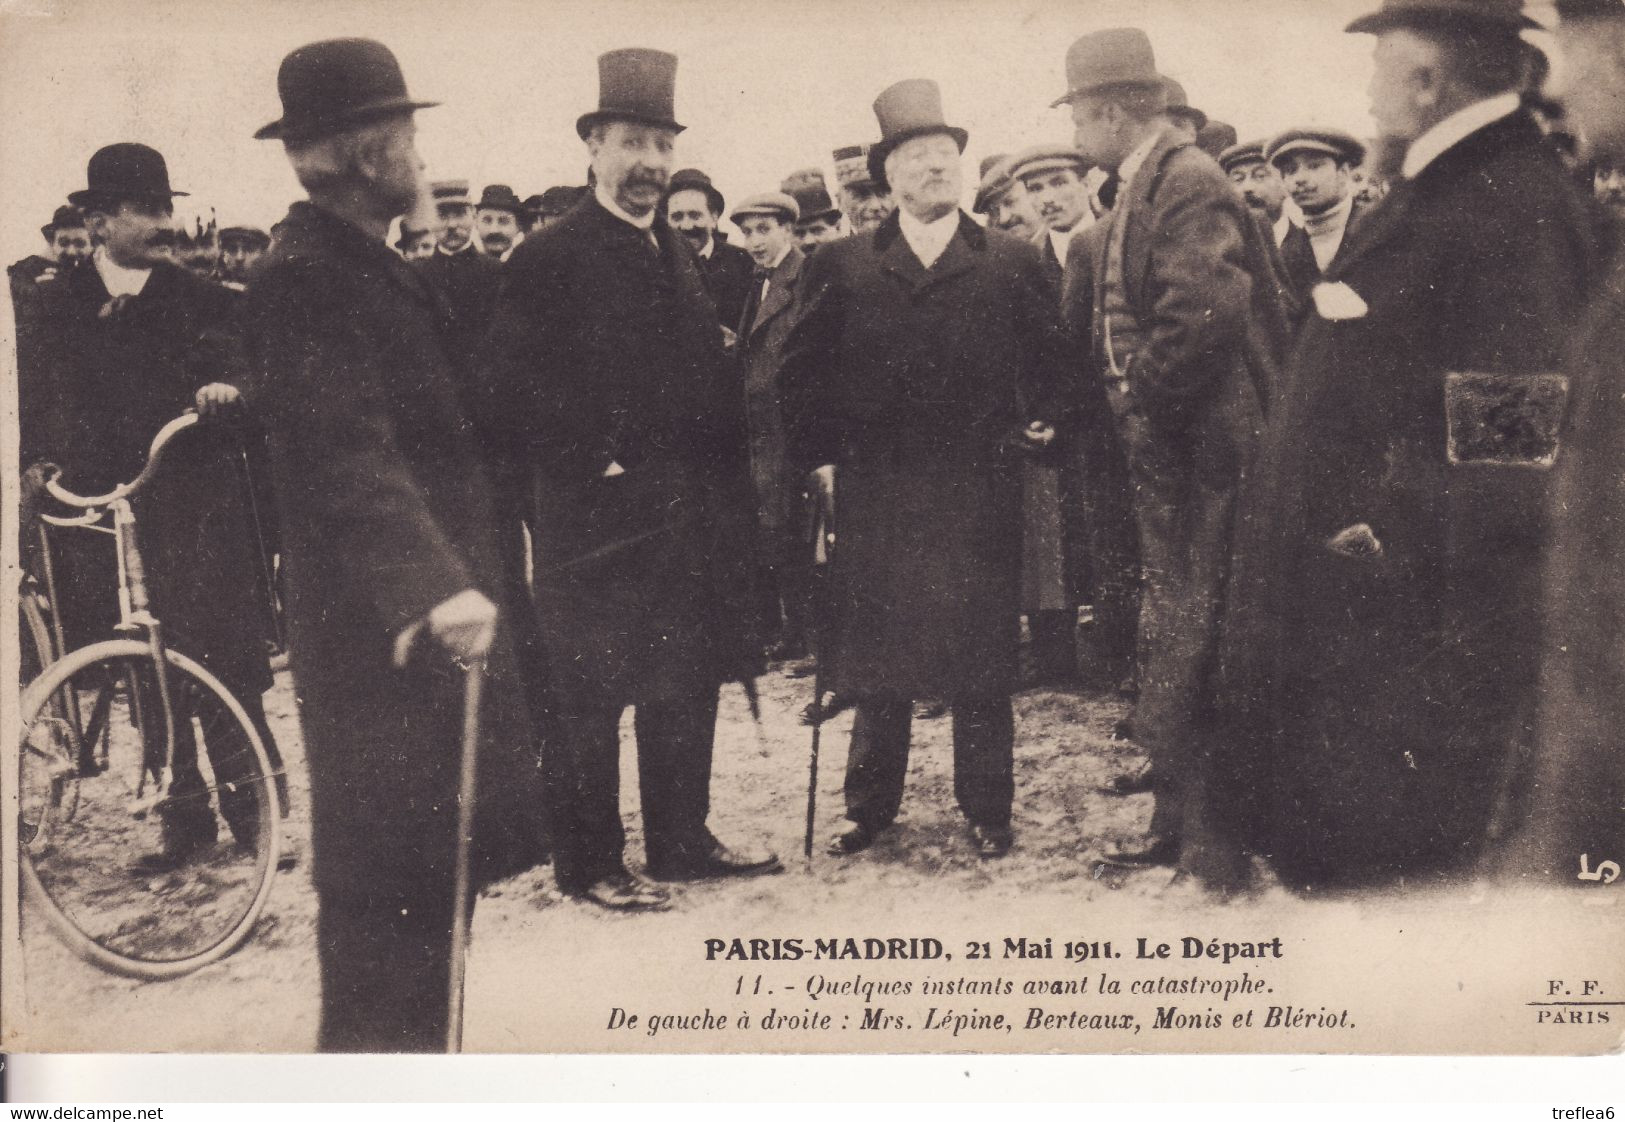 Course Aérienne PARIS-MADRID (21 Mai 1911) - Le Départ - Quelques Minutes Avant La Catastrophe ... - Accidents